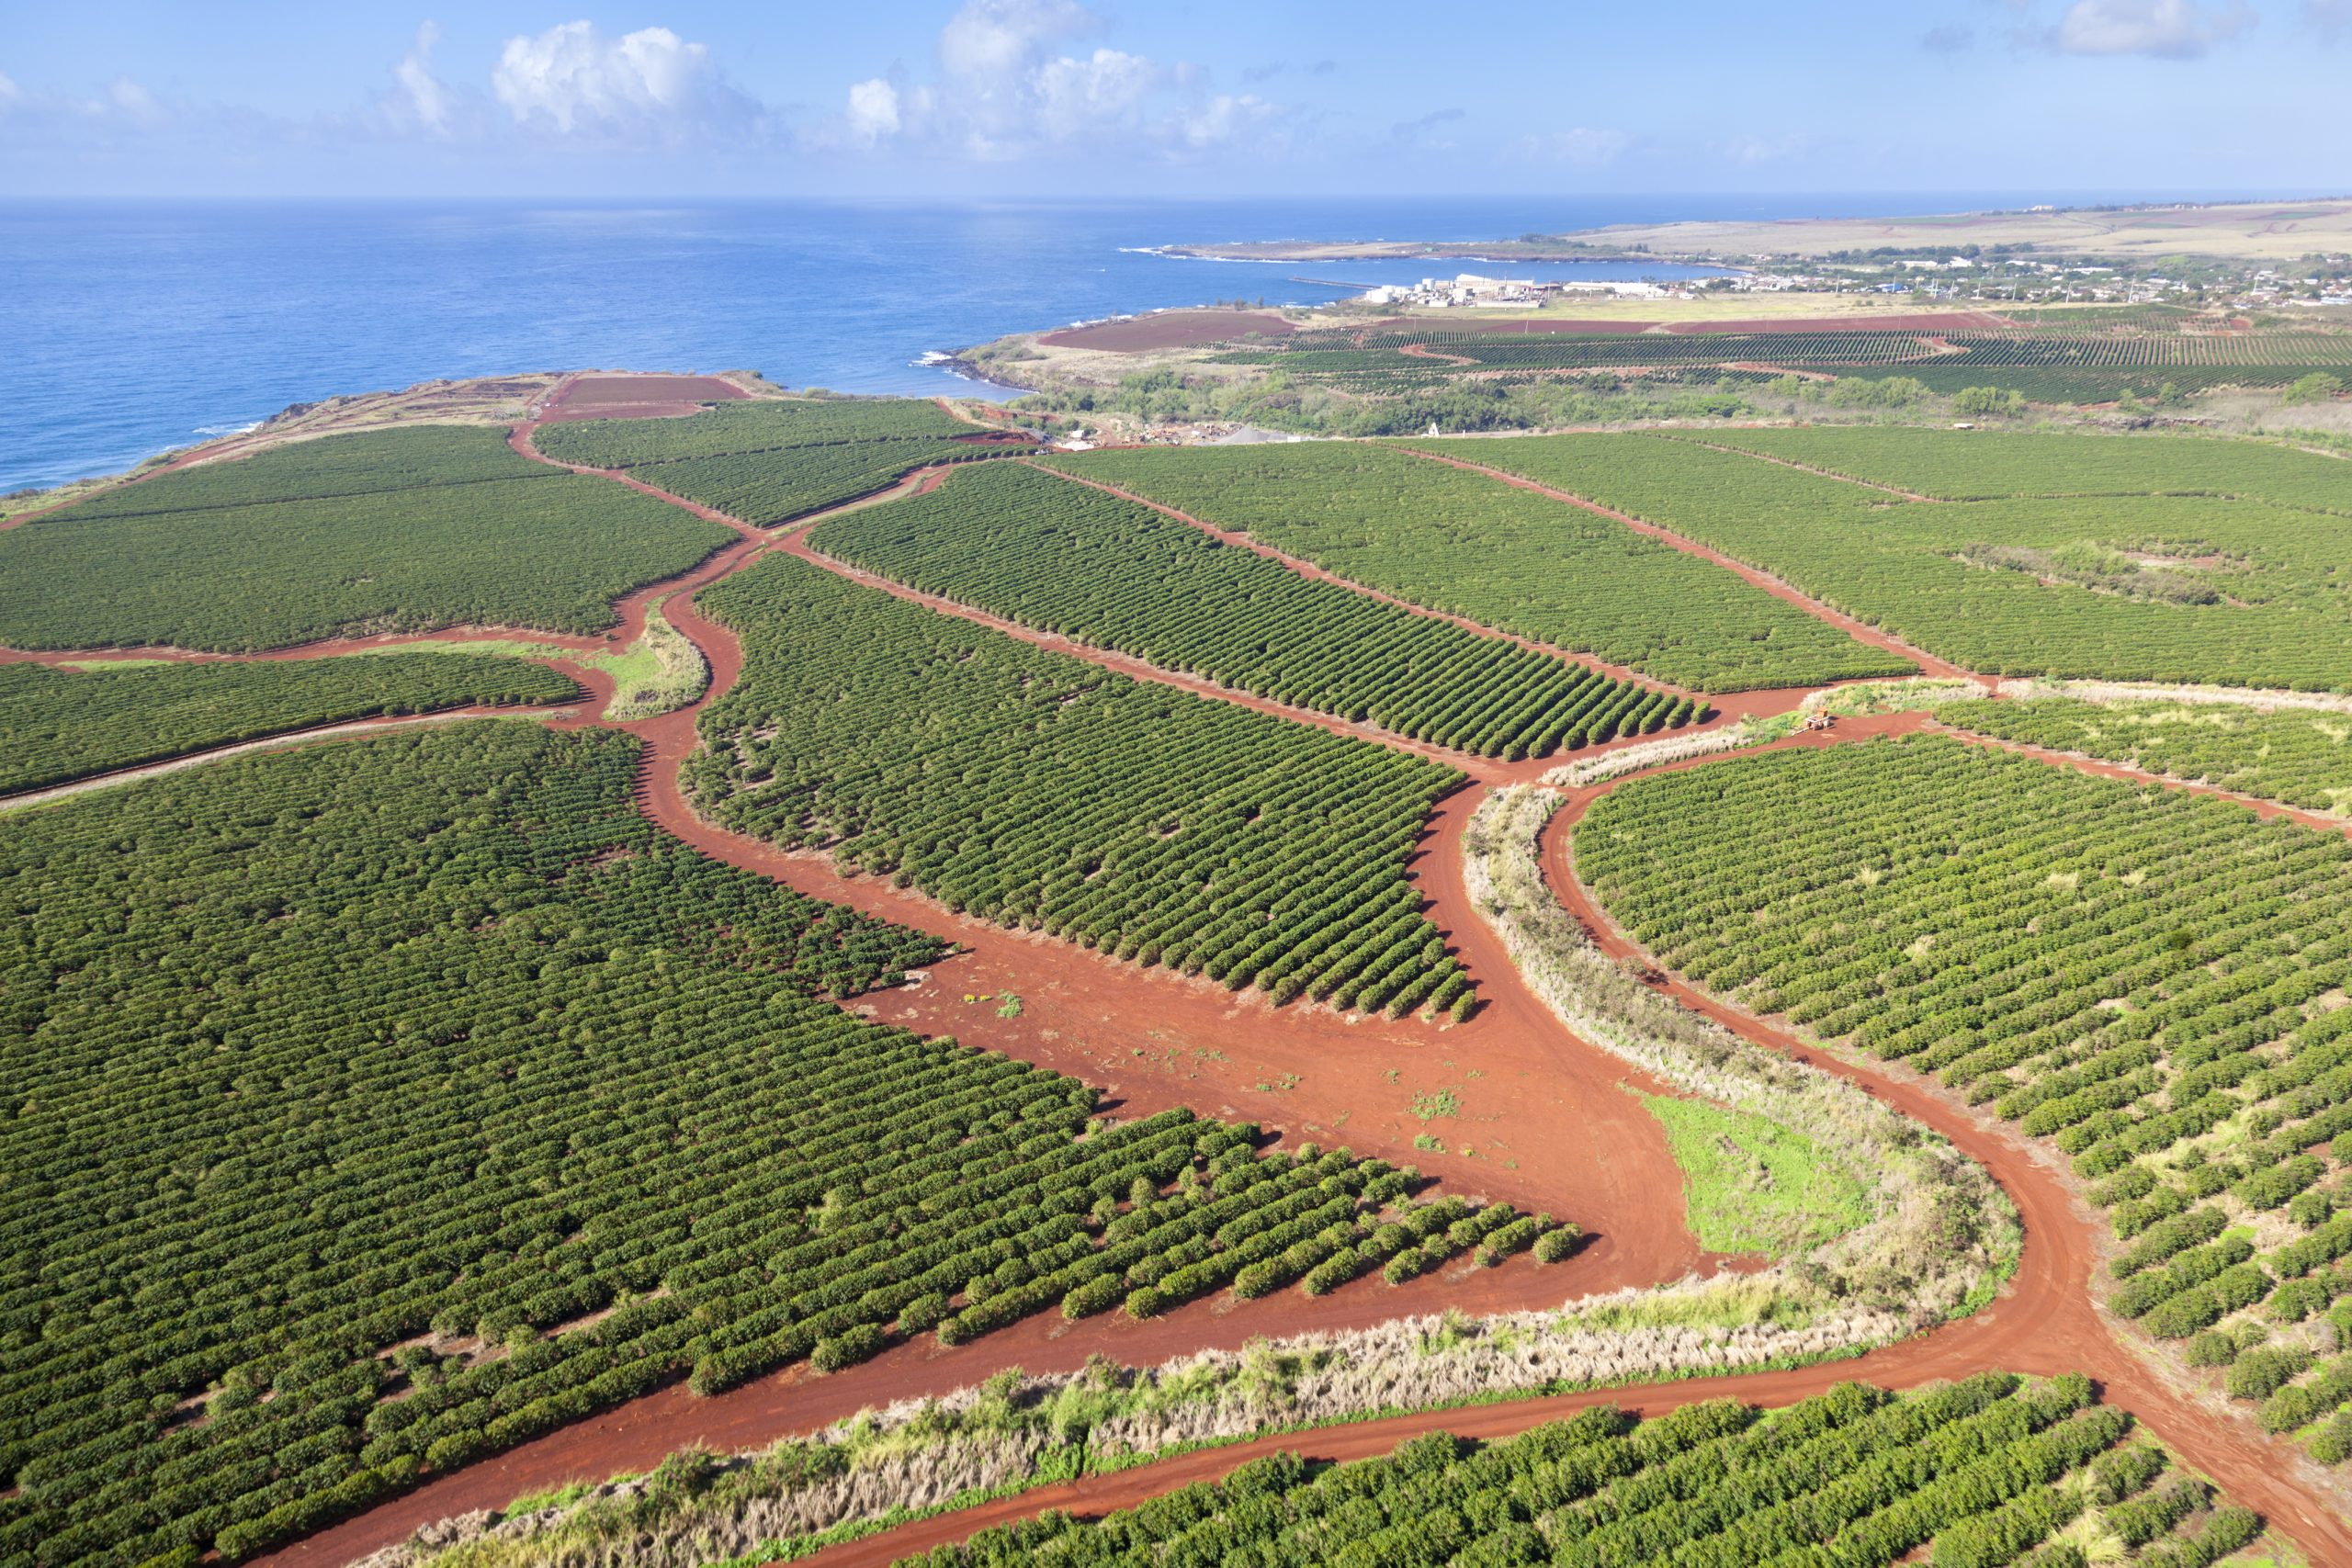 Coffee plantations by the coast Kauai